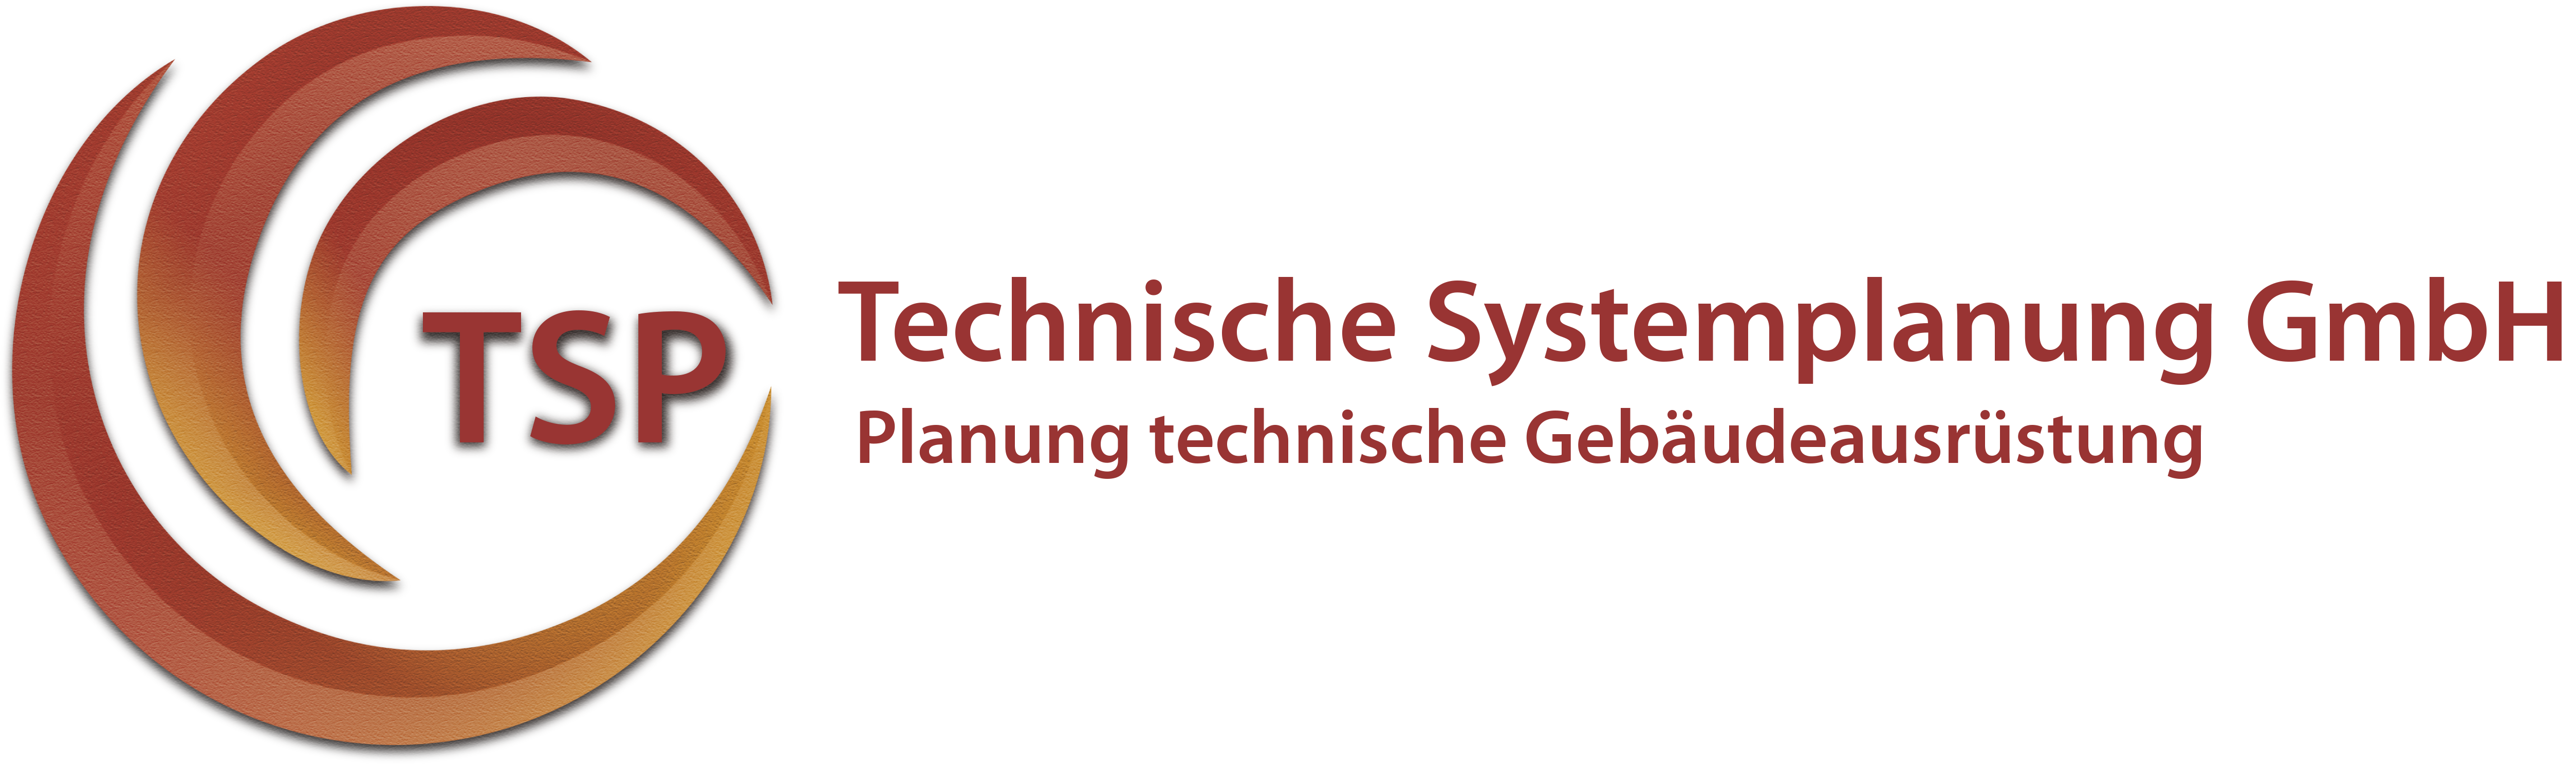 Technische Systemplanung GmbH